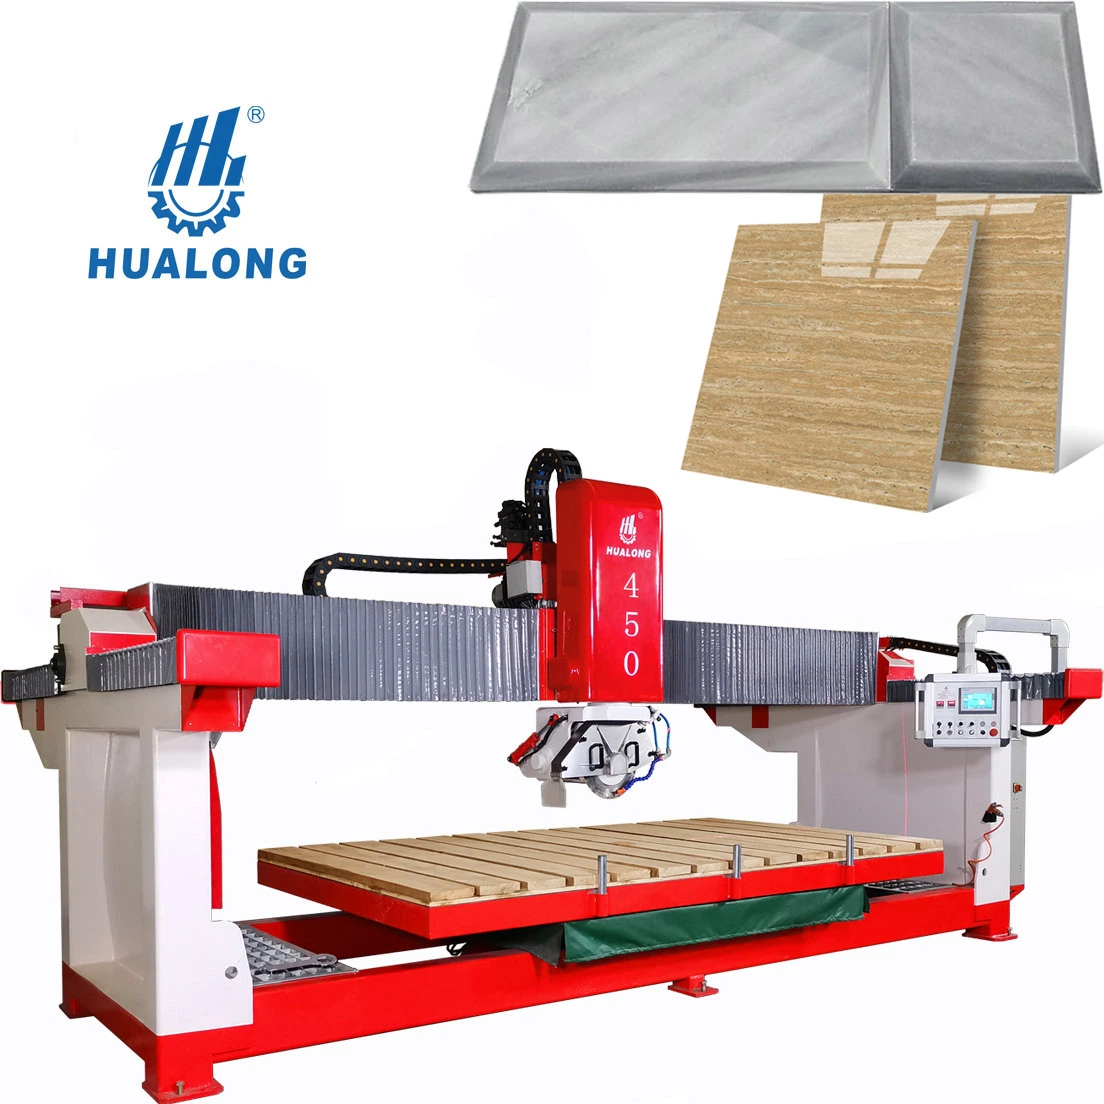 Máquinas Hualong Hlsq-450 Corte automático de granito de 45 graus da chapa de chapa Máquina cortador de cerâmica Serra de ponte de pedra para porcelana de quartzo de mármore